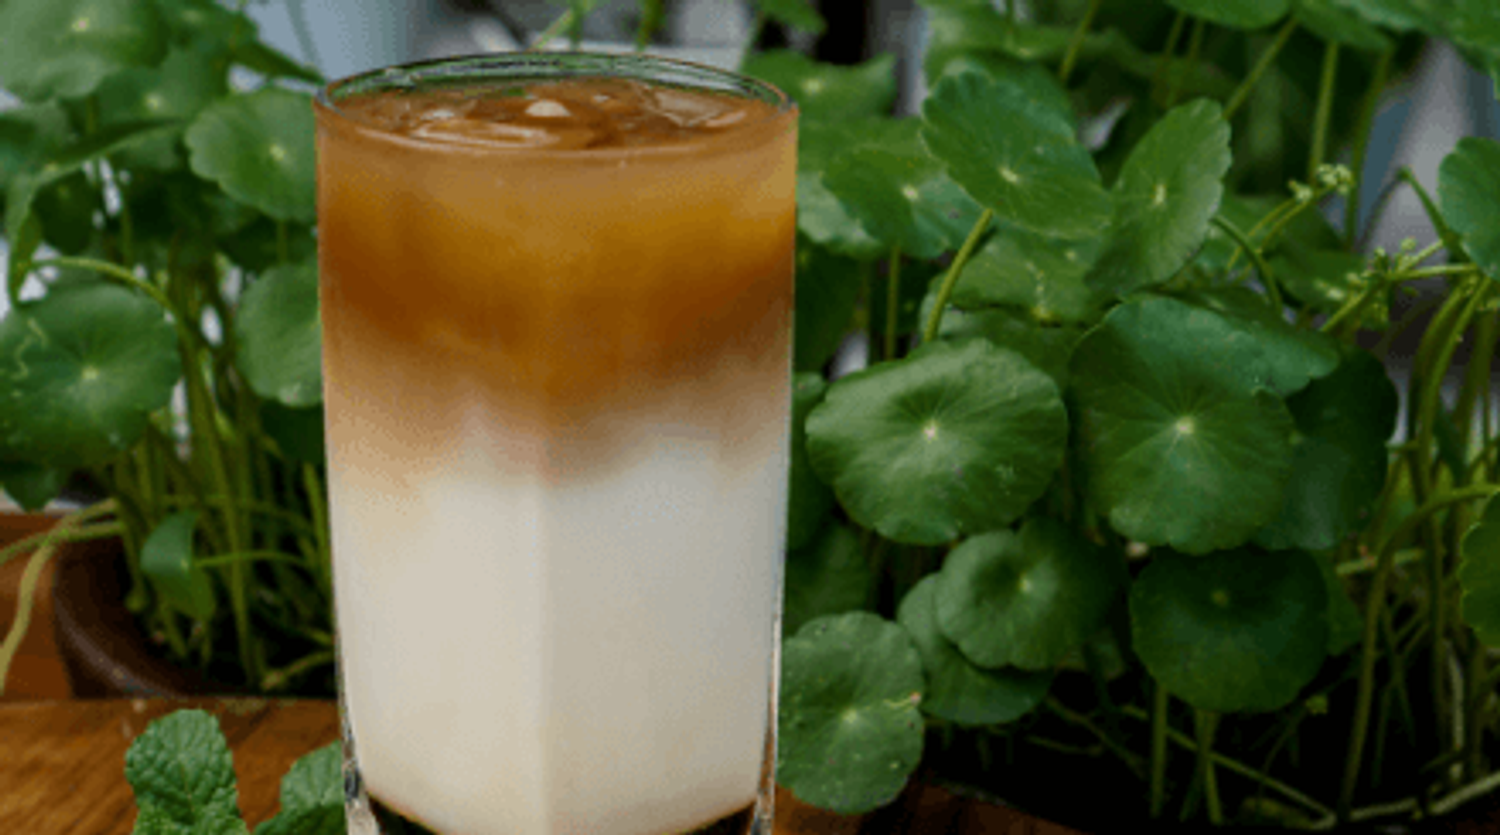 Vietnamese Iced Coffee - Wild Wild Whisk